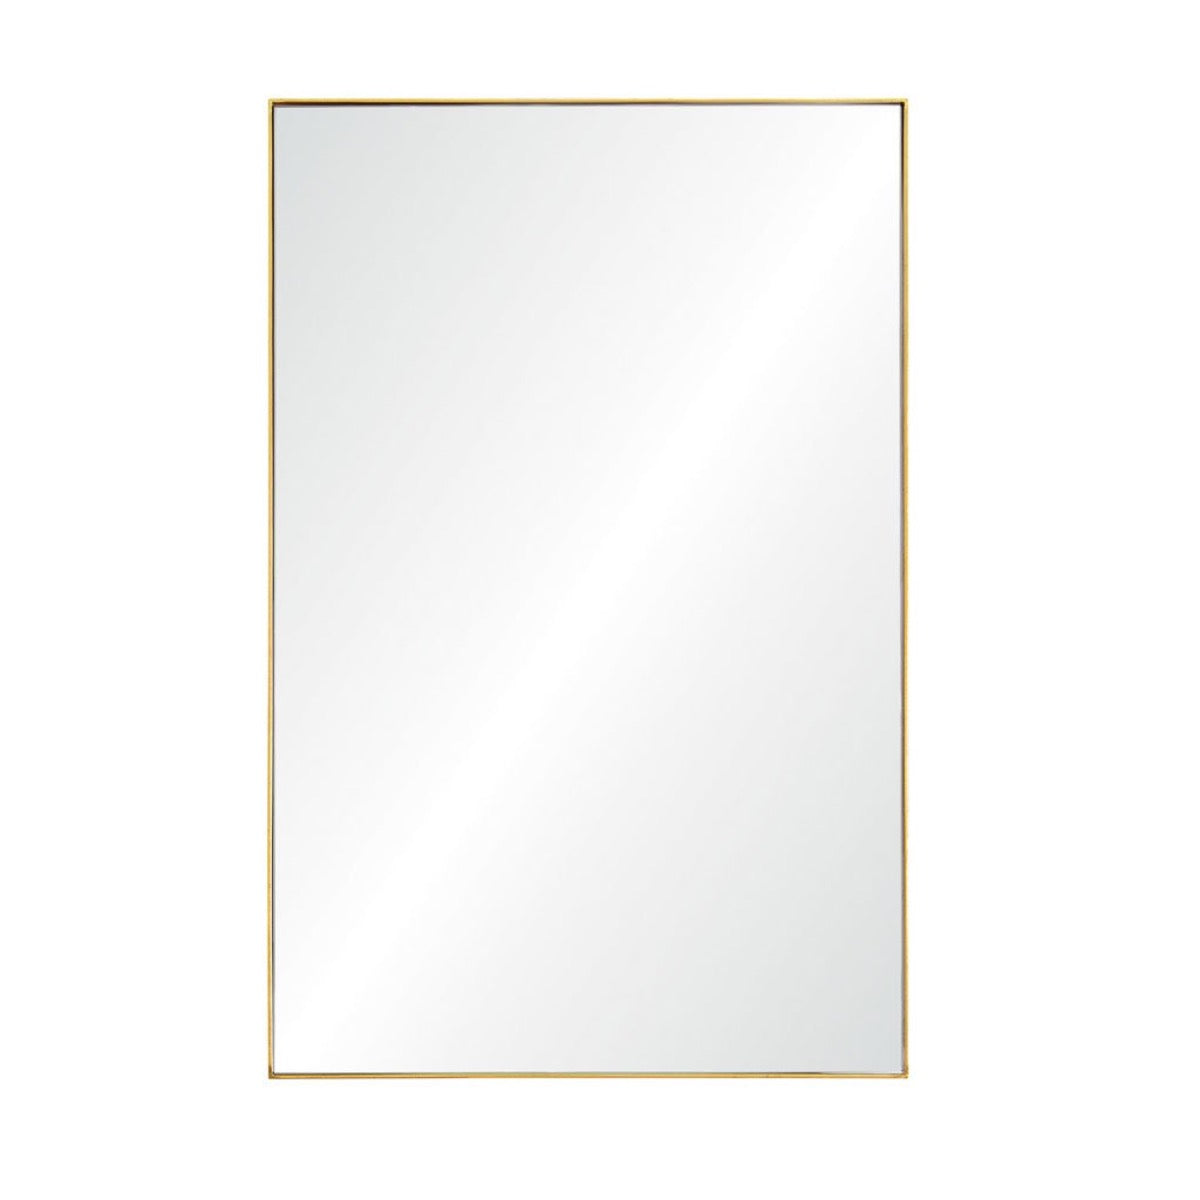 Goldie Mirror. Front view. 